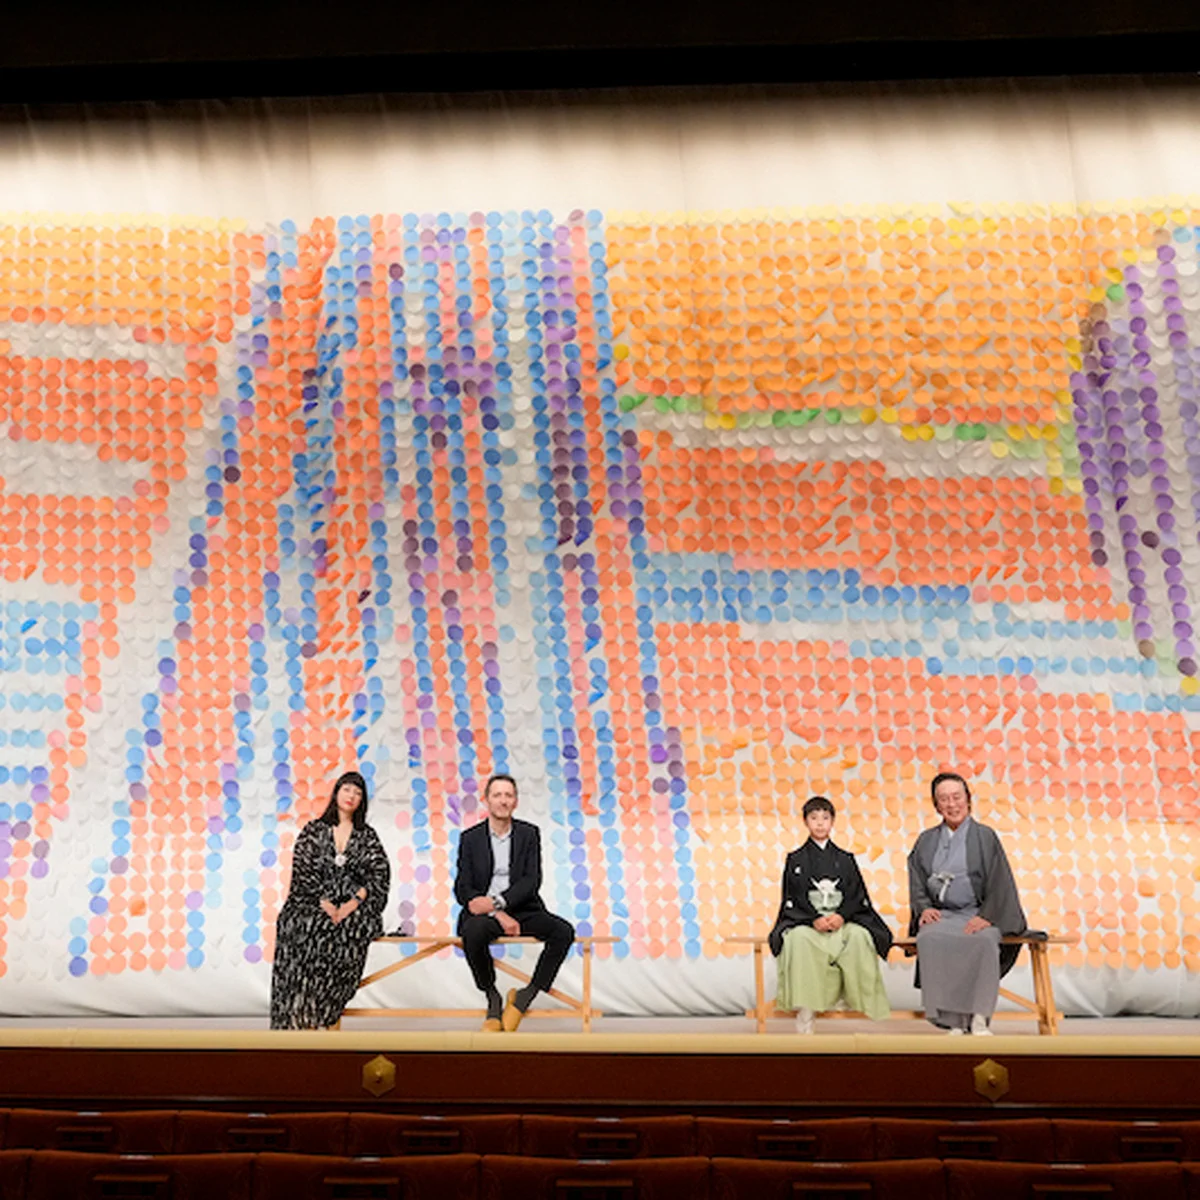 【シャネル】のサポートにより歌舞伎俳優・初代尾上眞秀の初舞台を記念した華やかな祝幕が完成